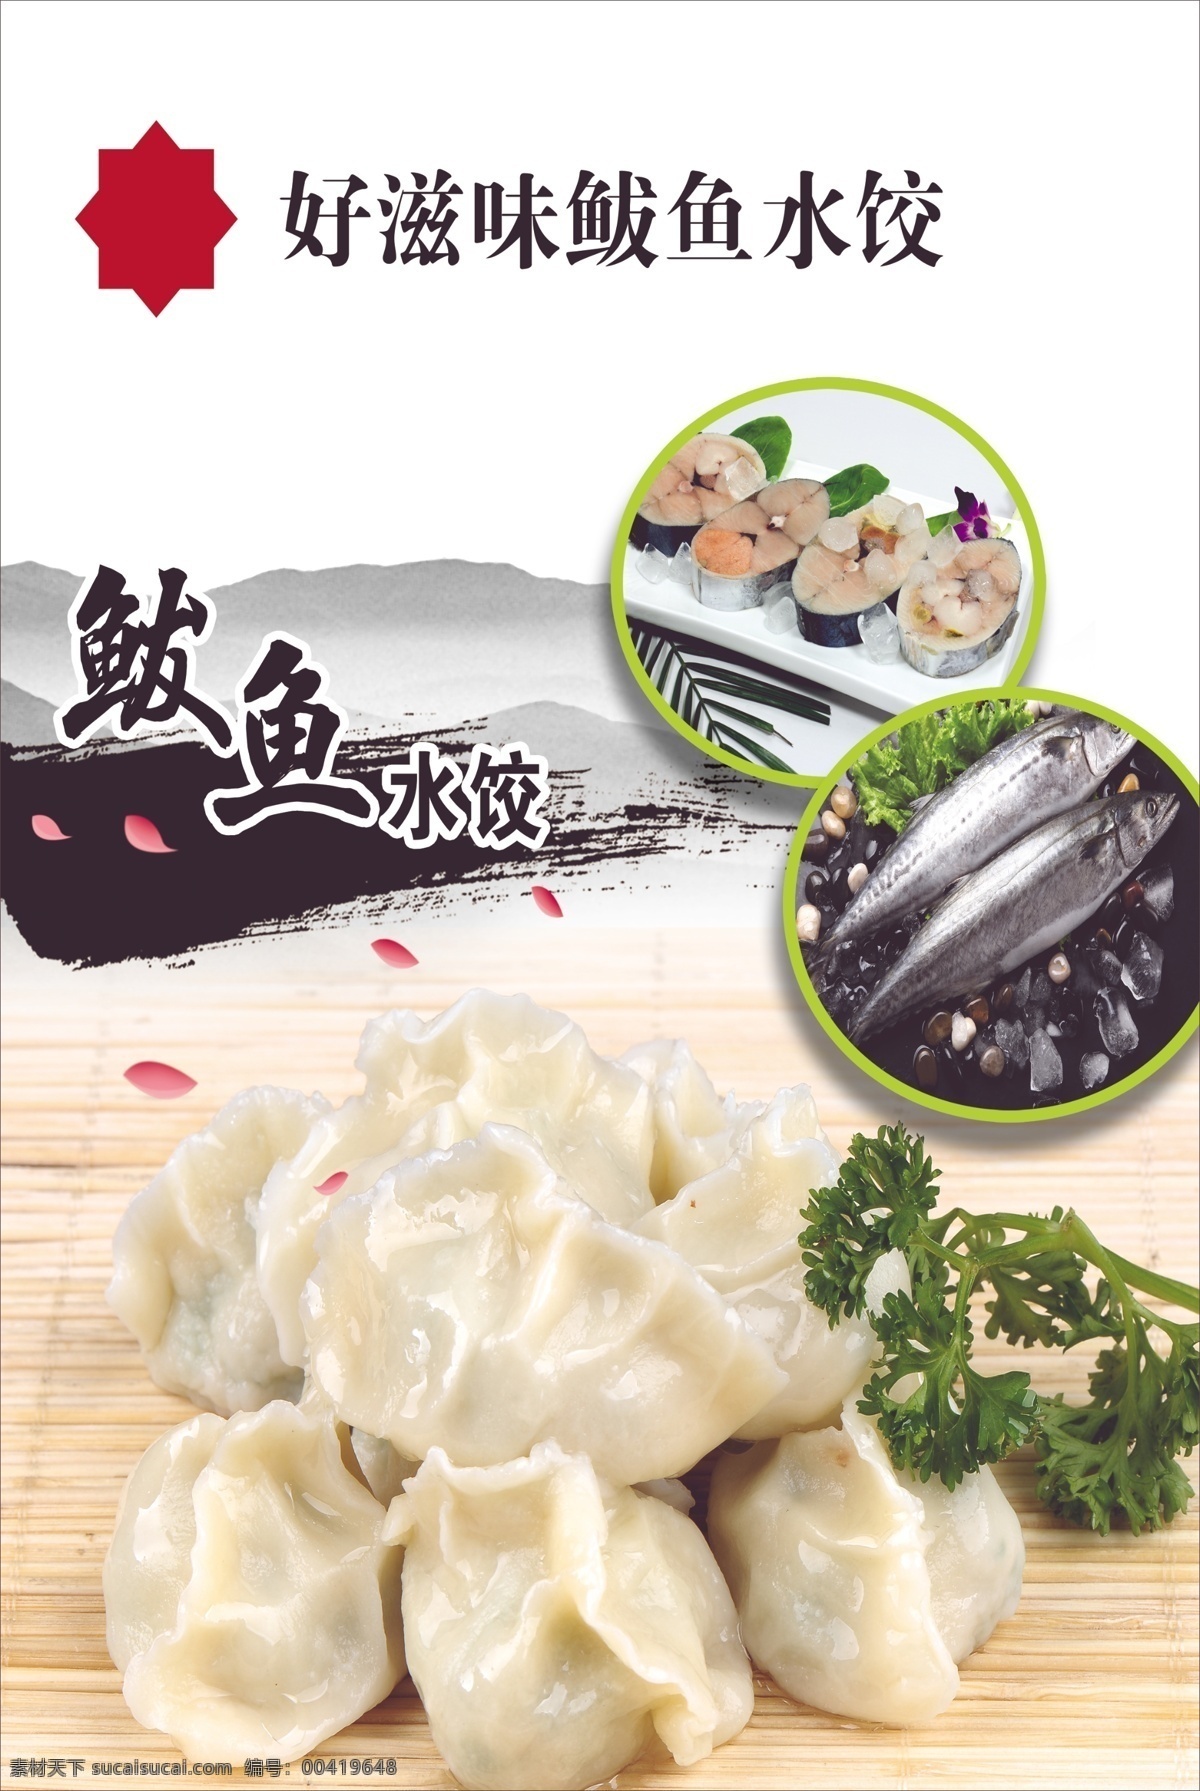 饺子 鲅鱼 渤海 烤鱼 煎鱼 生煎 菜 肉类 美食 海鲜 碳烤 生鱼 烧烤 鱼馅 分层